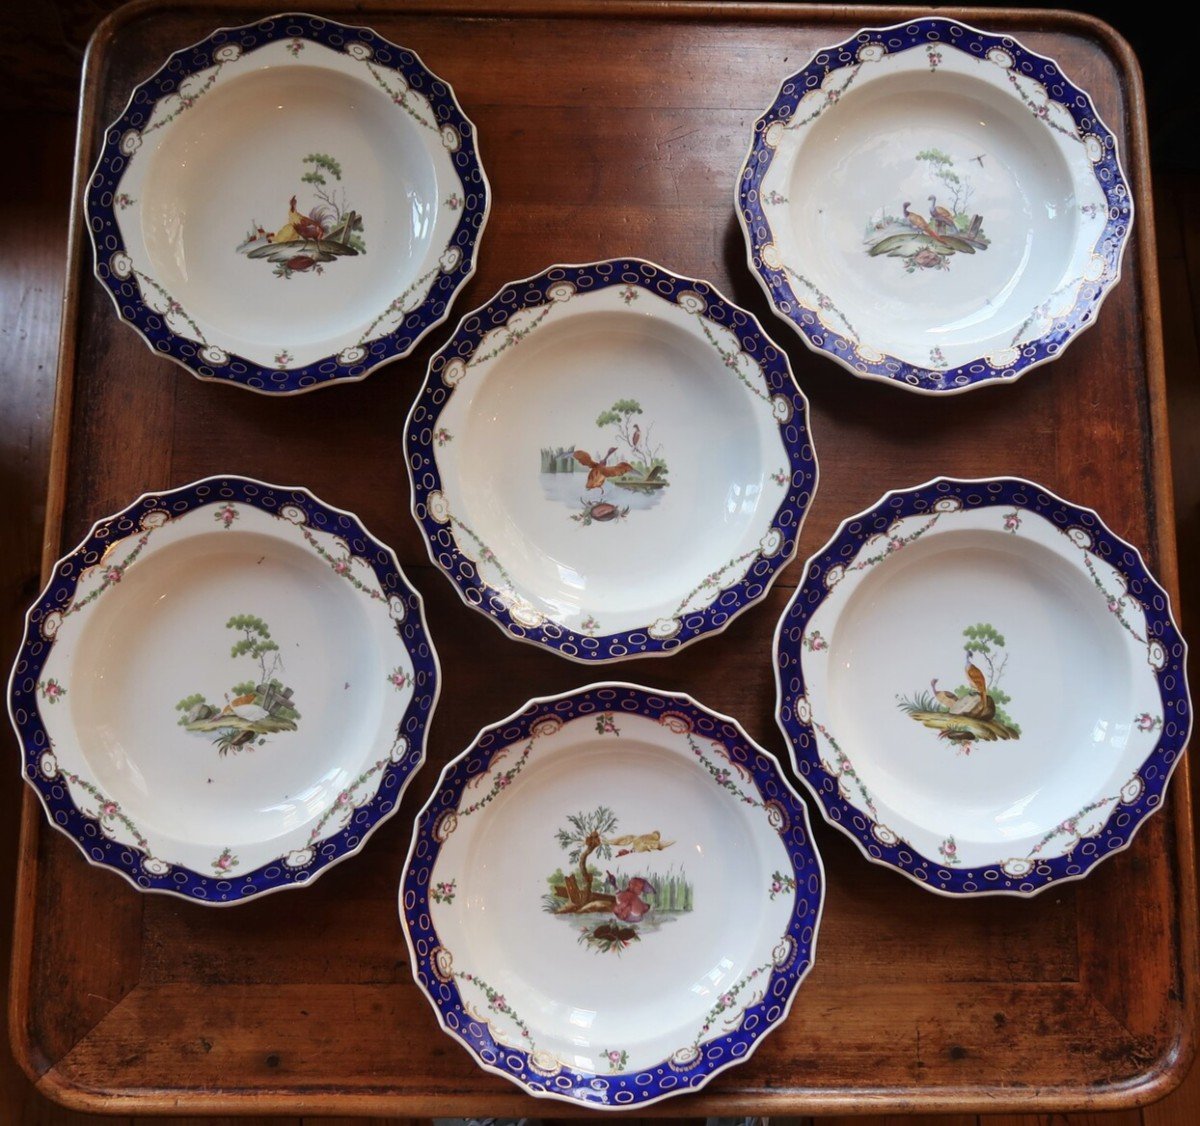 Suite Of 6 Tournai Soft Porcelain Plates - The Hague, 18th Century-photo-2